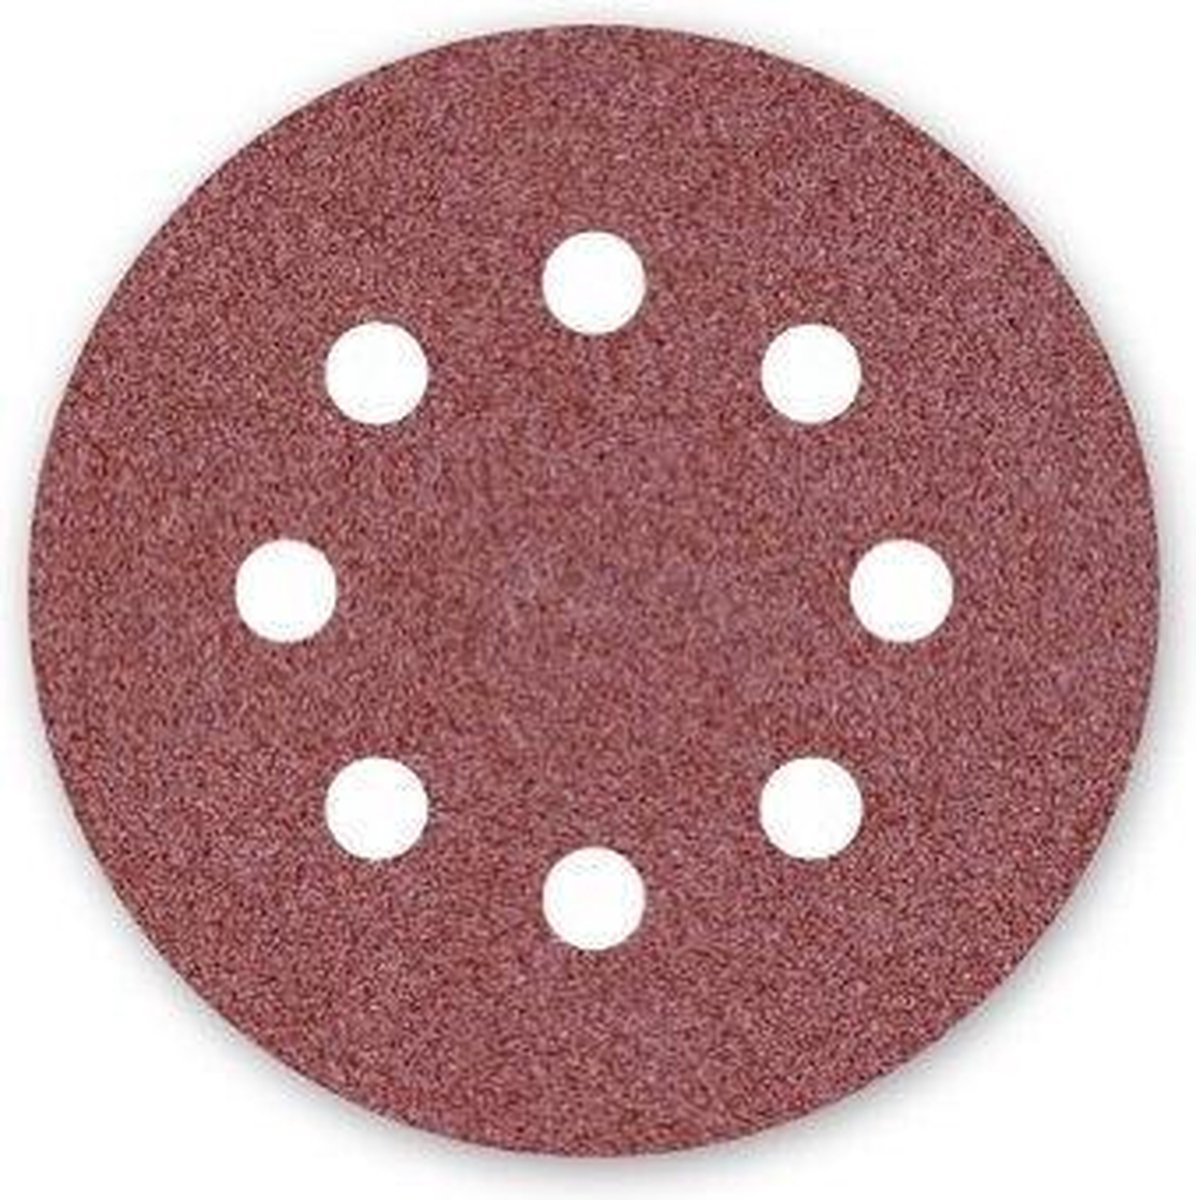 Dronco sanding disc sander - ø125 mm - grain 60-8 hole